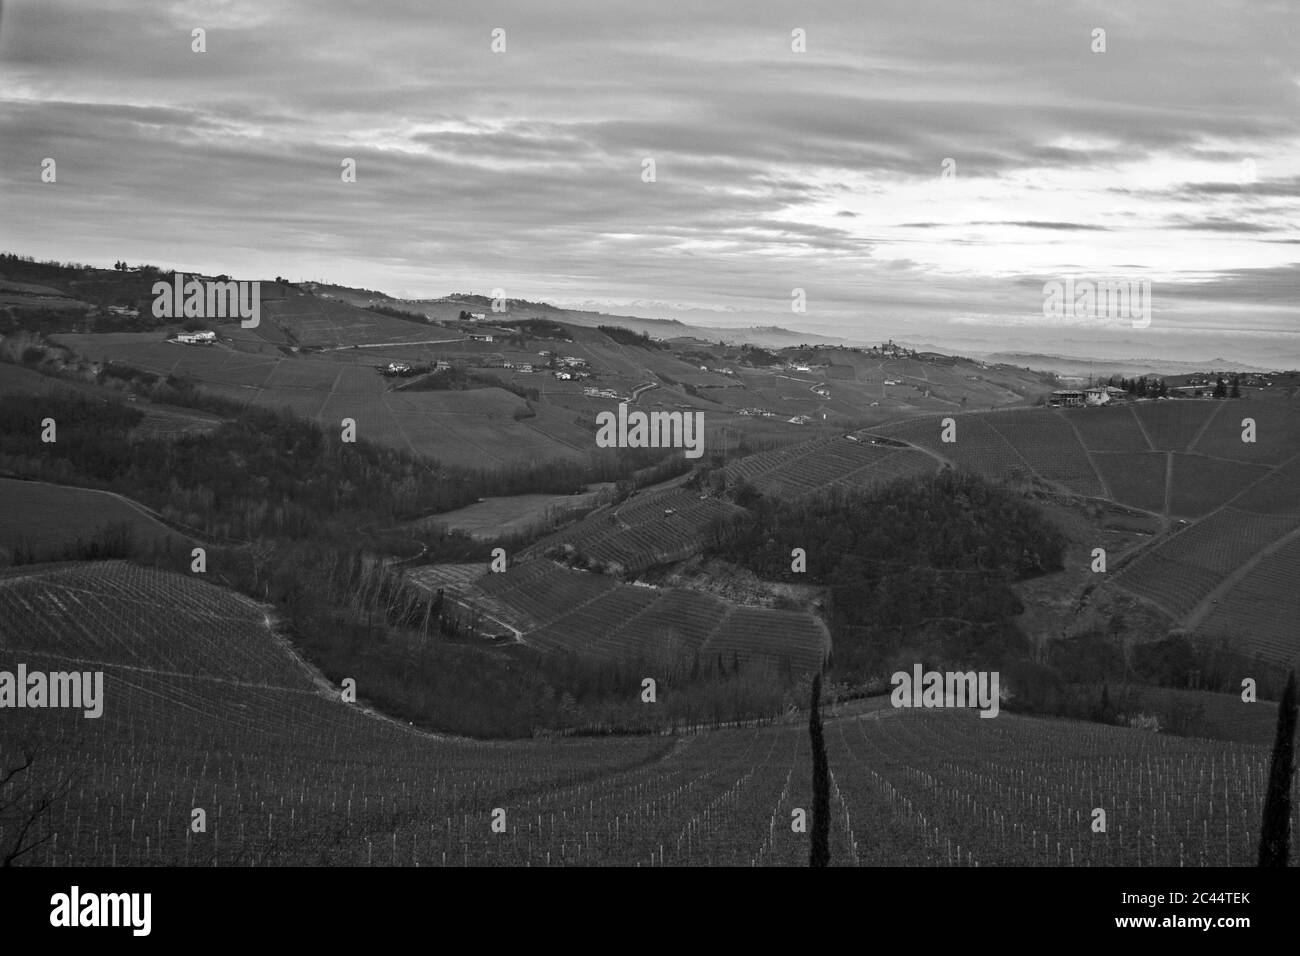 Photo en niveaux de gris des petites maisons rurales entourées de champs sous un ciel nuageux Banque D'Images